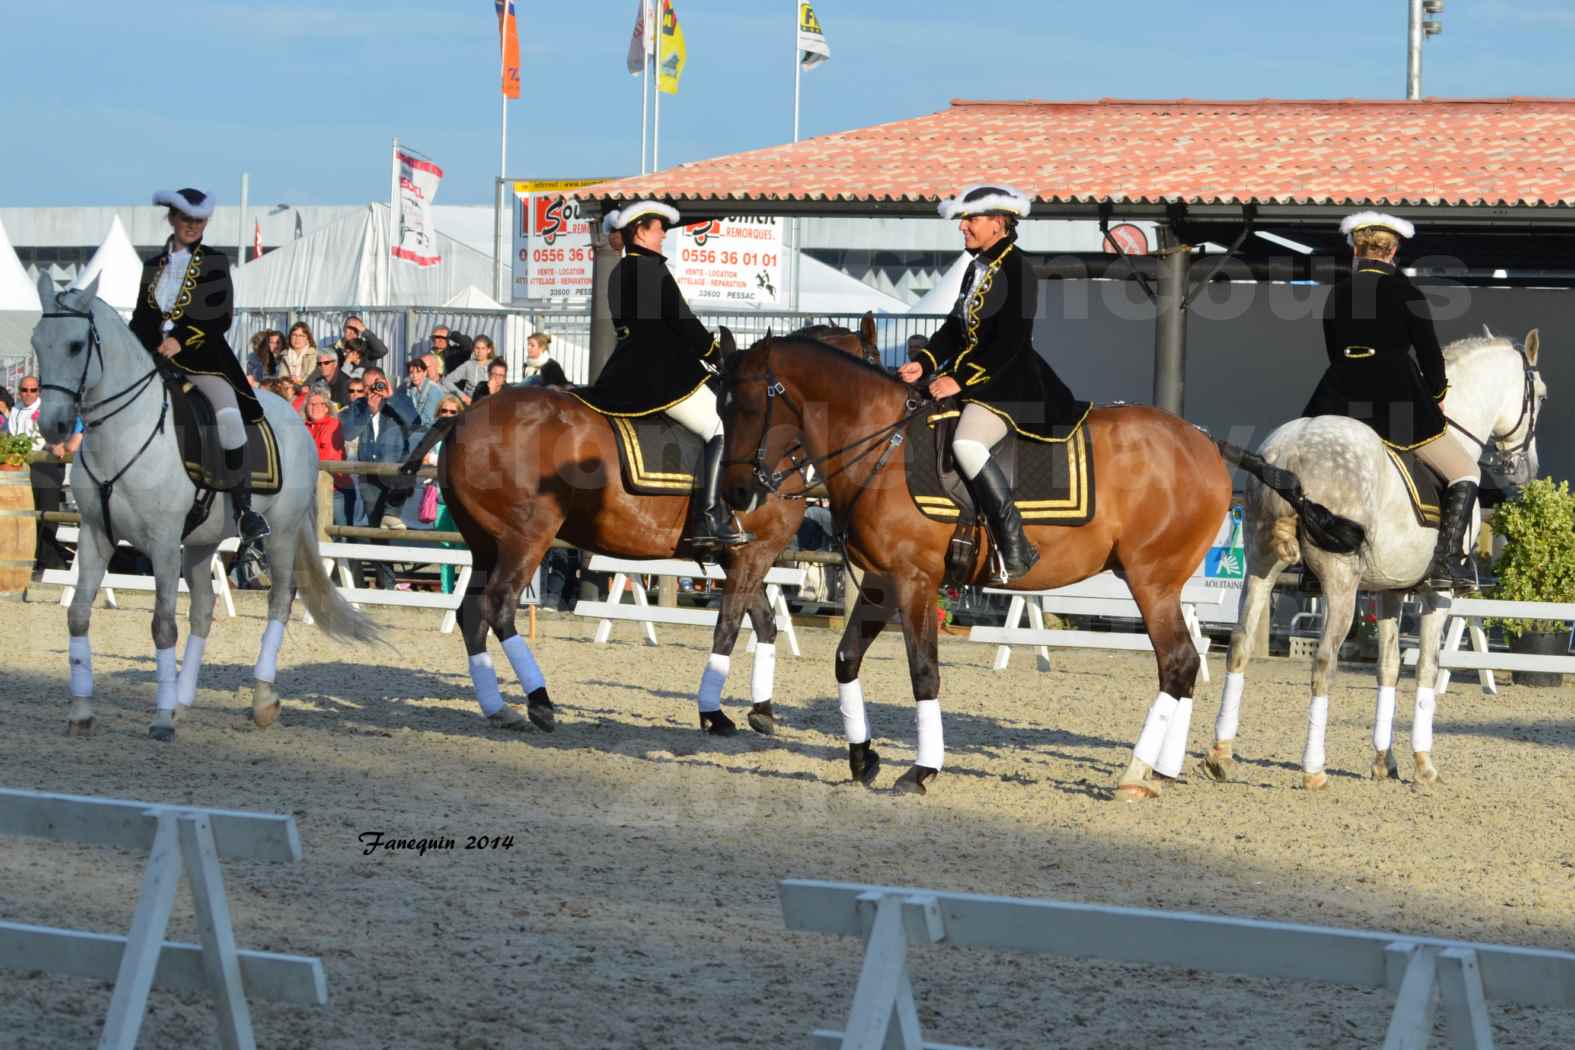 Carrousel de cavalières Equitation de travail lors du salon "Equitaine" à Bordeaux en 2014 - 37